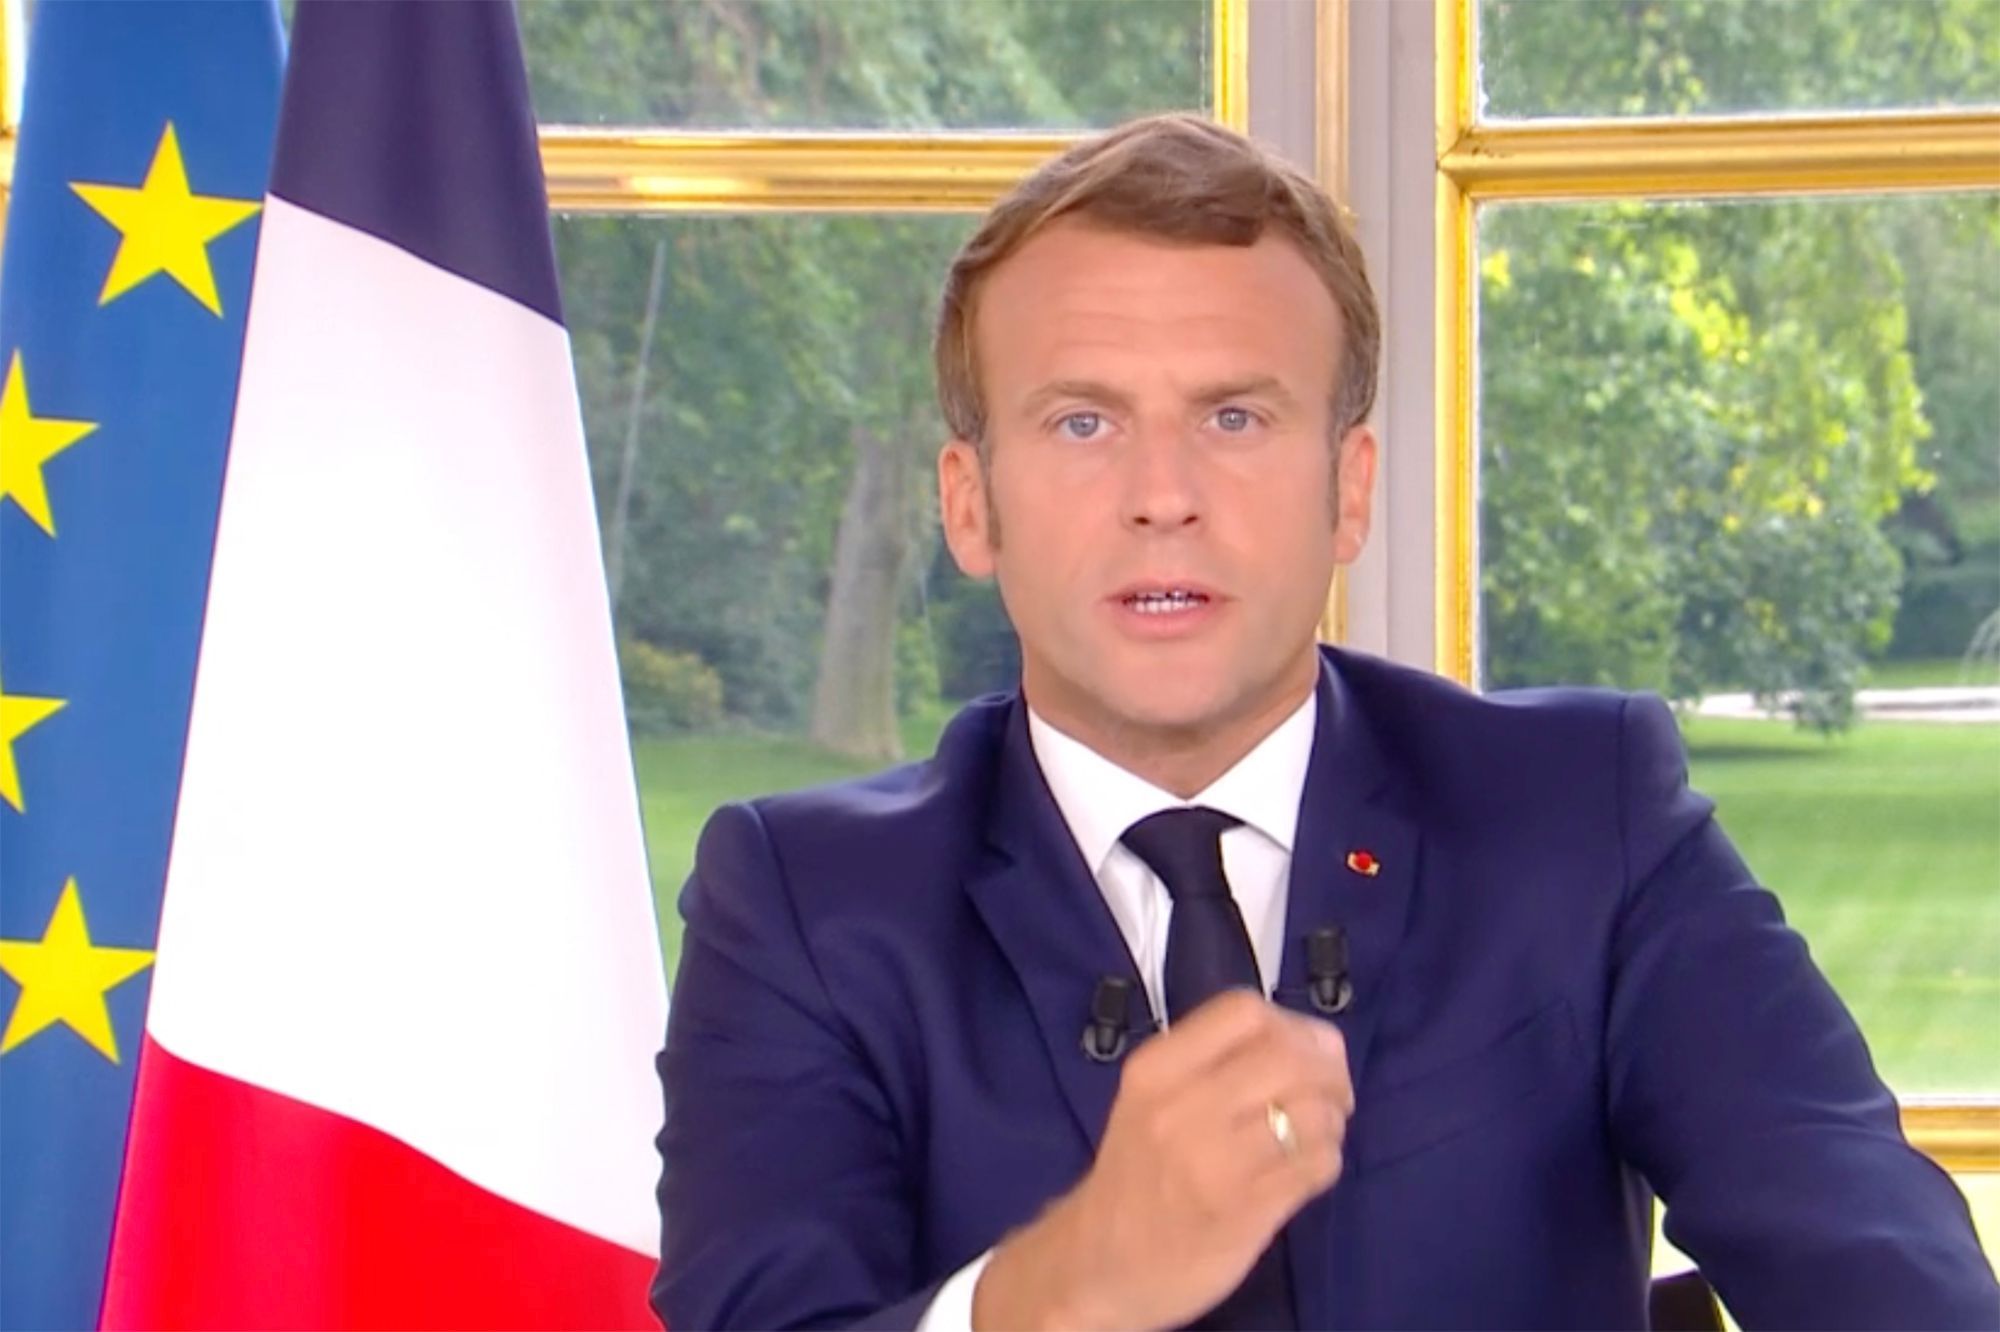 Emmanuel Macron tient ses ministres par la menace "Je suis à sa disposition pour recevoir sa lettre de démission"